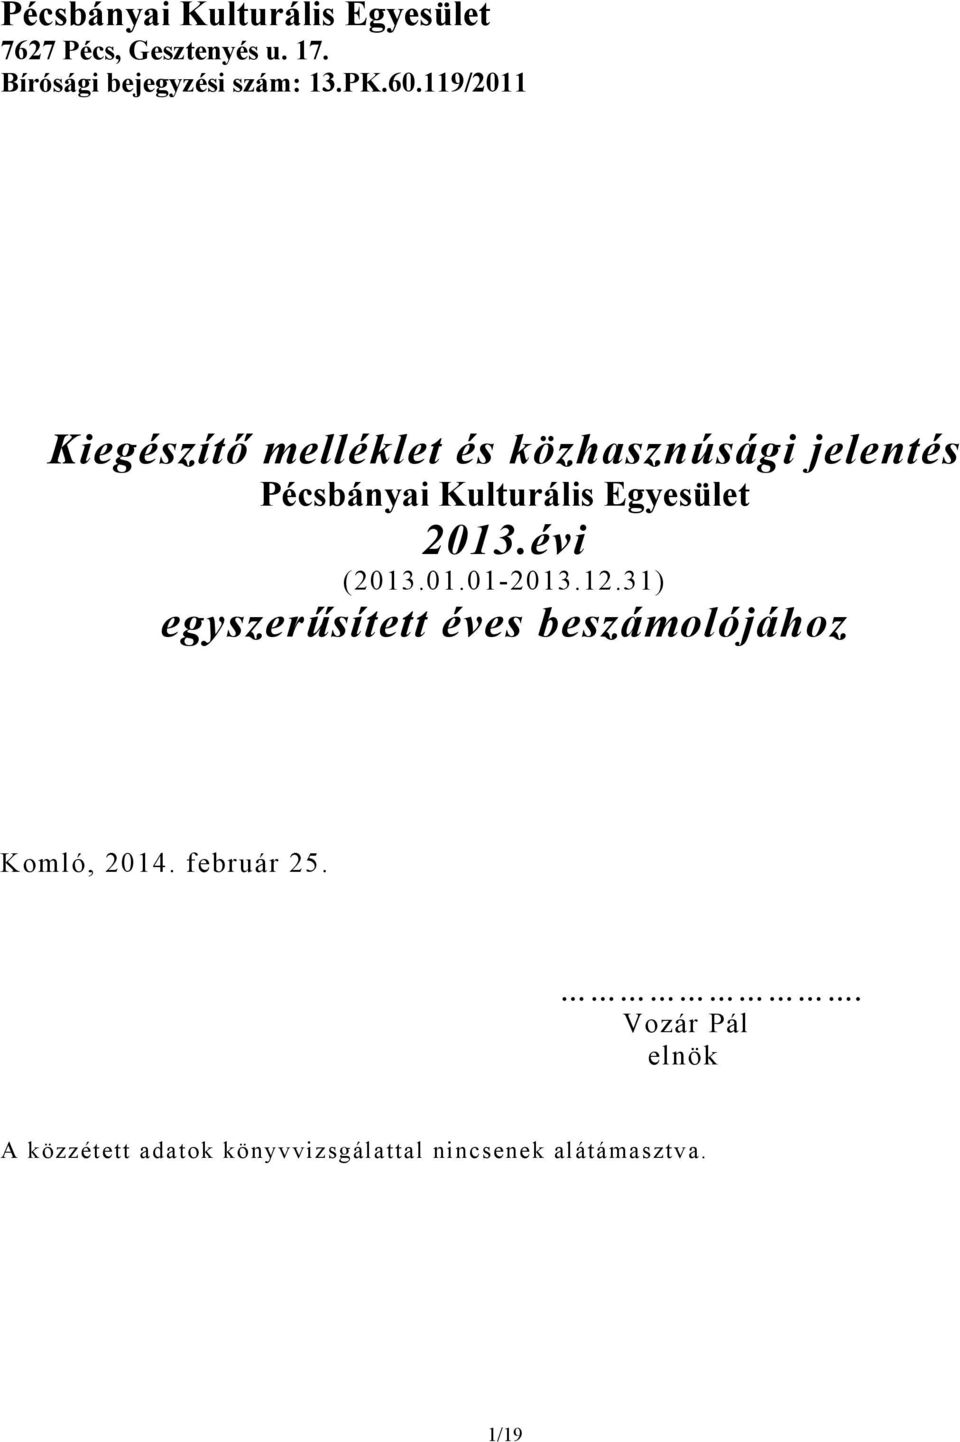 119/2011 Kiegészítő melléklet és közhasznúsági jelentés Pécsbányai Kulturális Egyesület